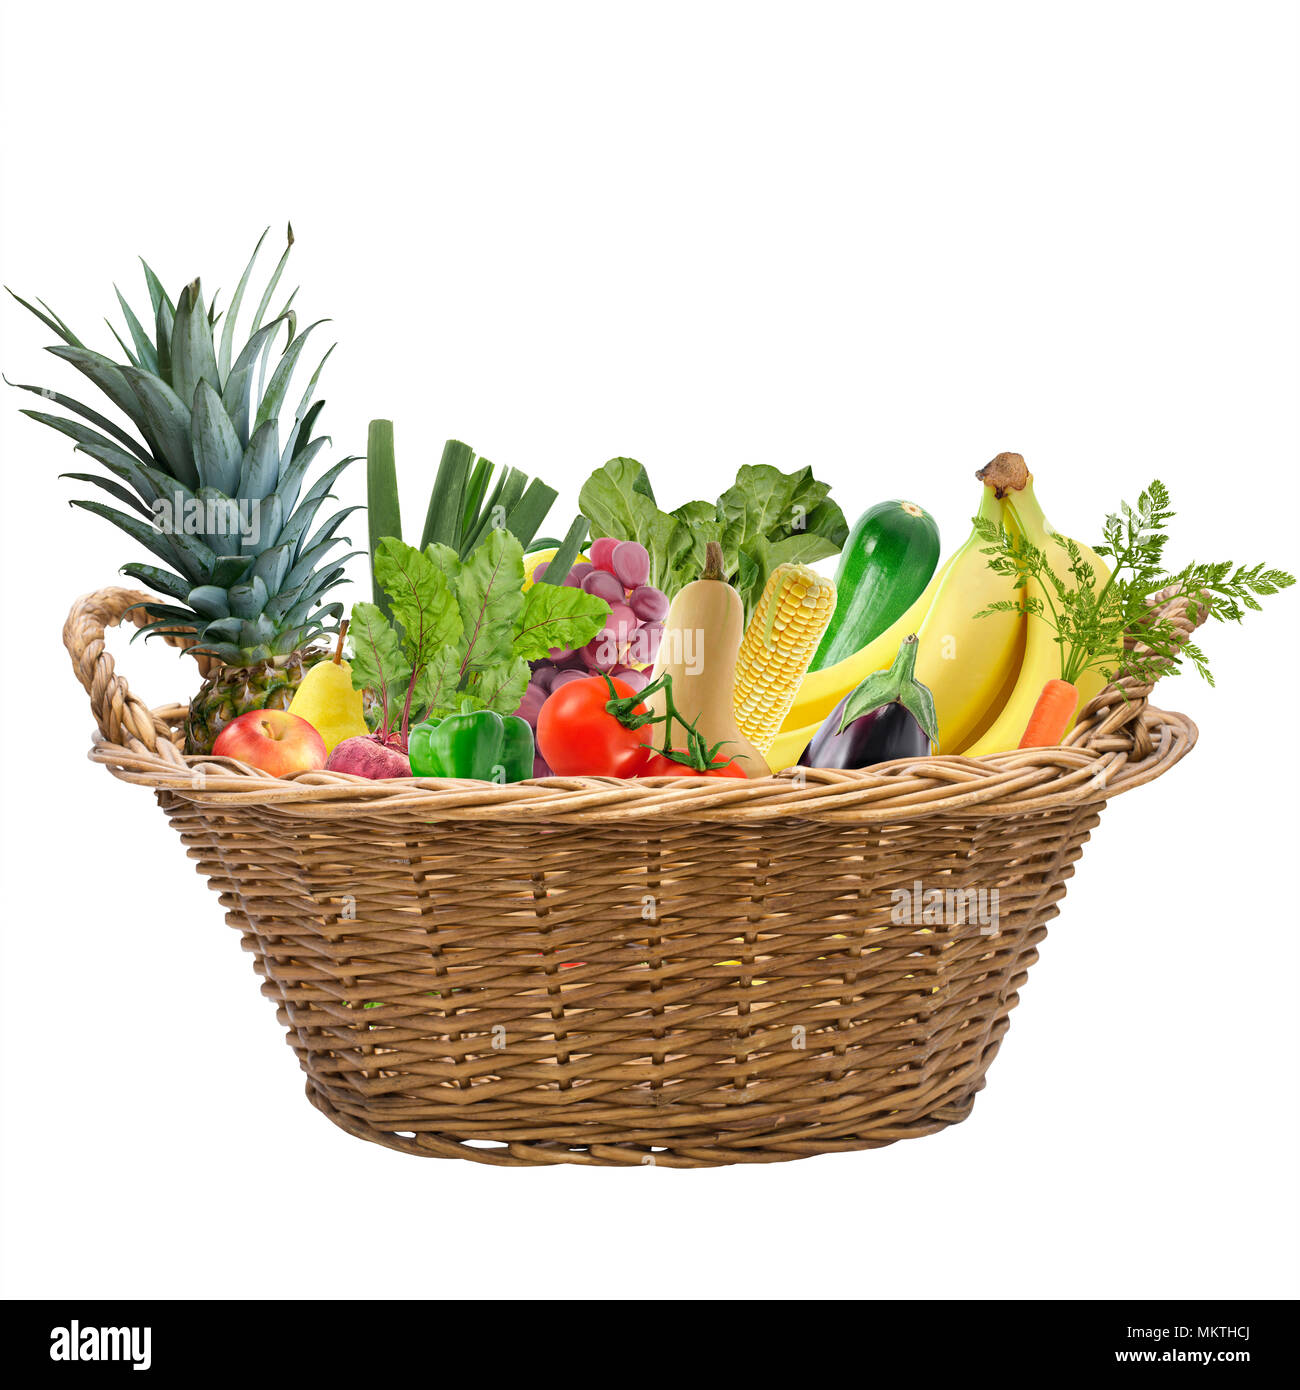 La frutta e la verdura fresca in un cestello isolato su sfondo bianco Foto Stock